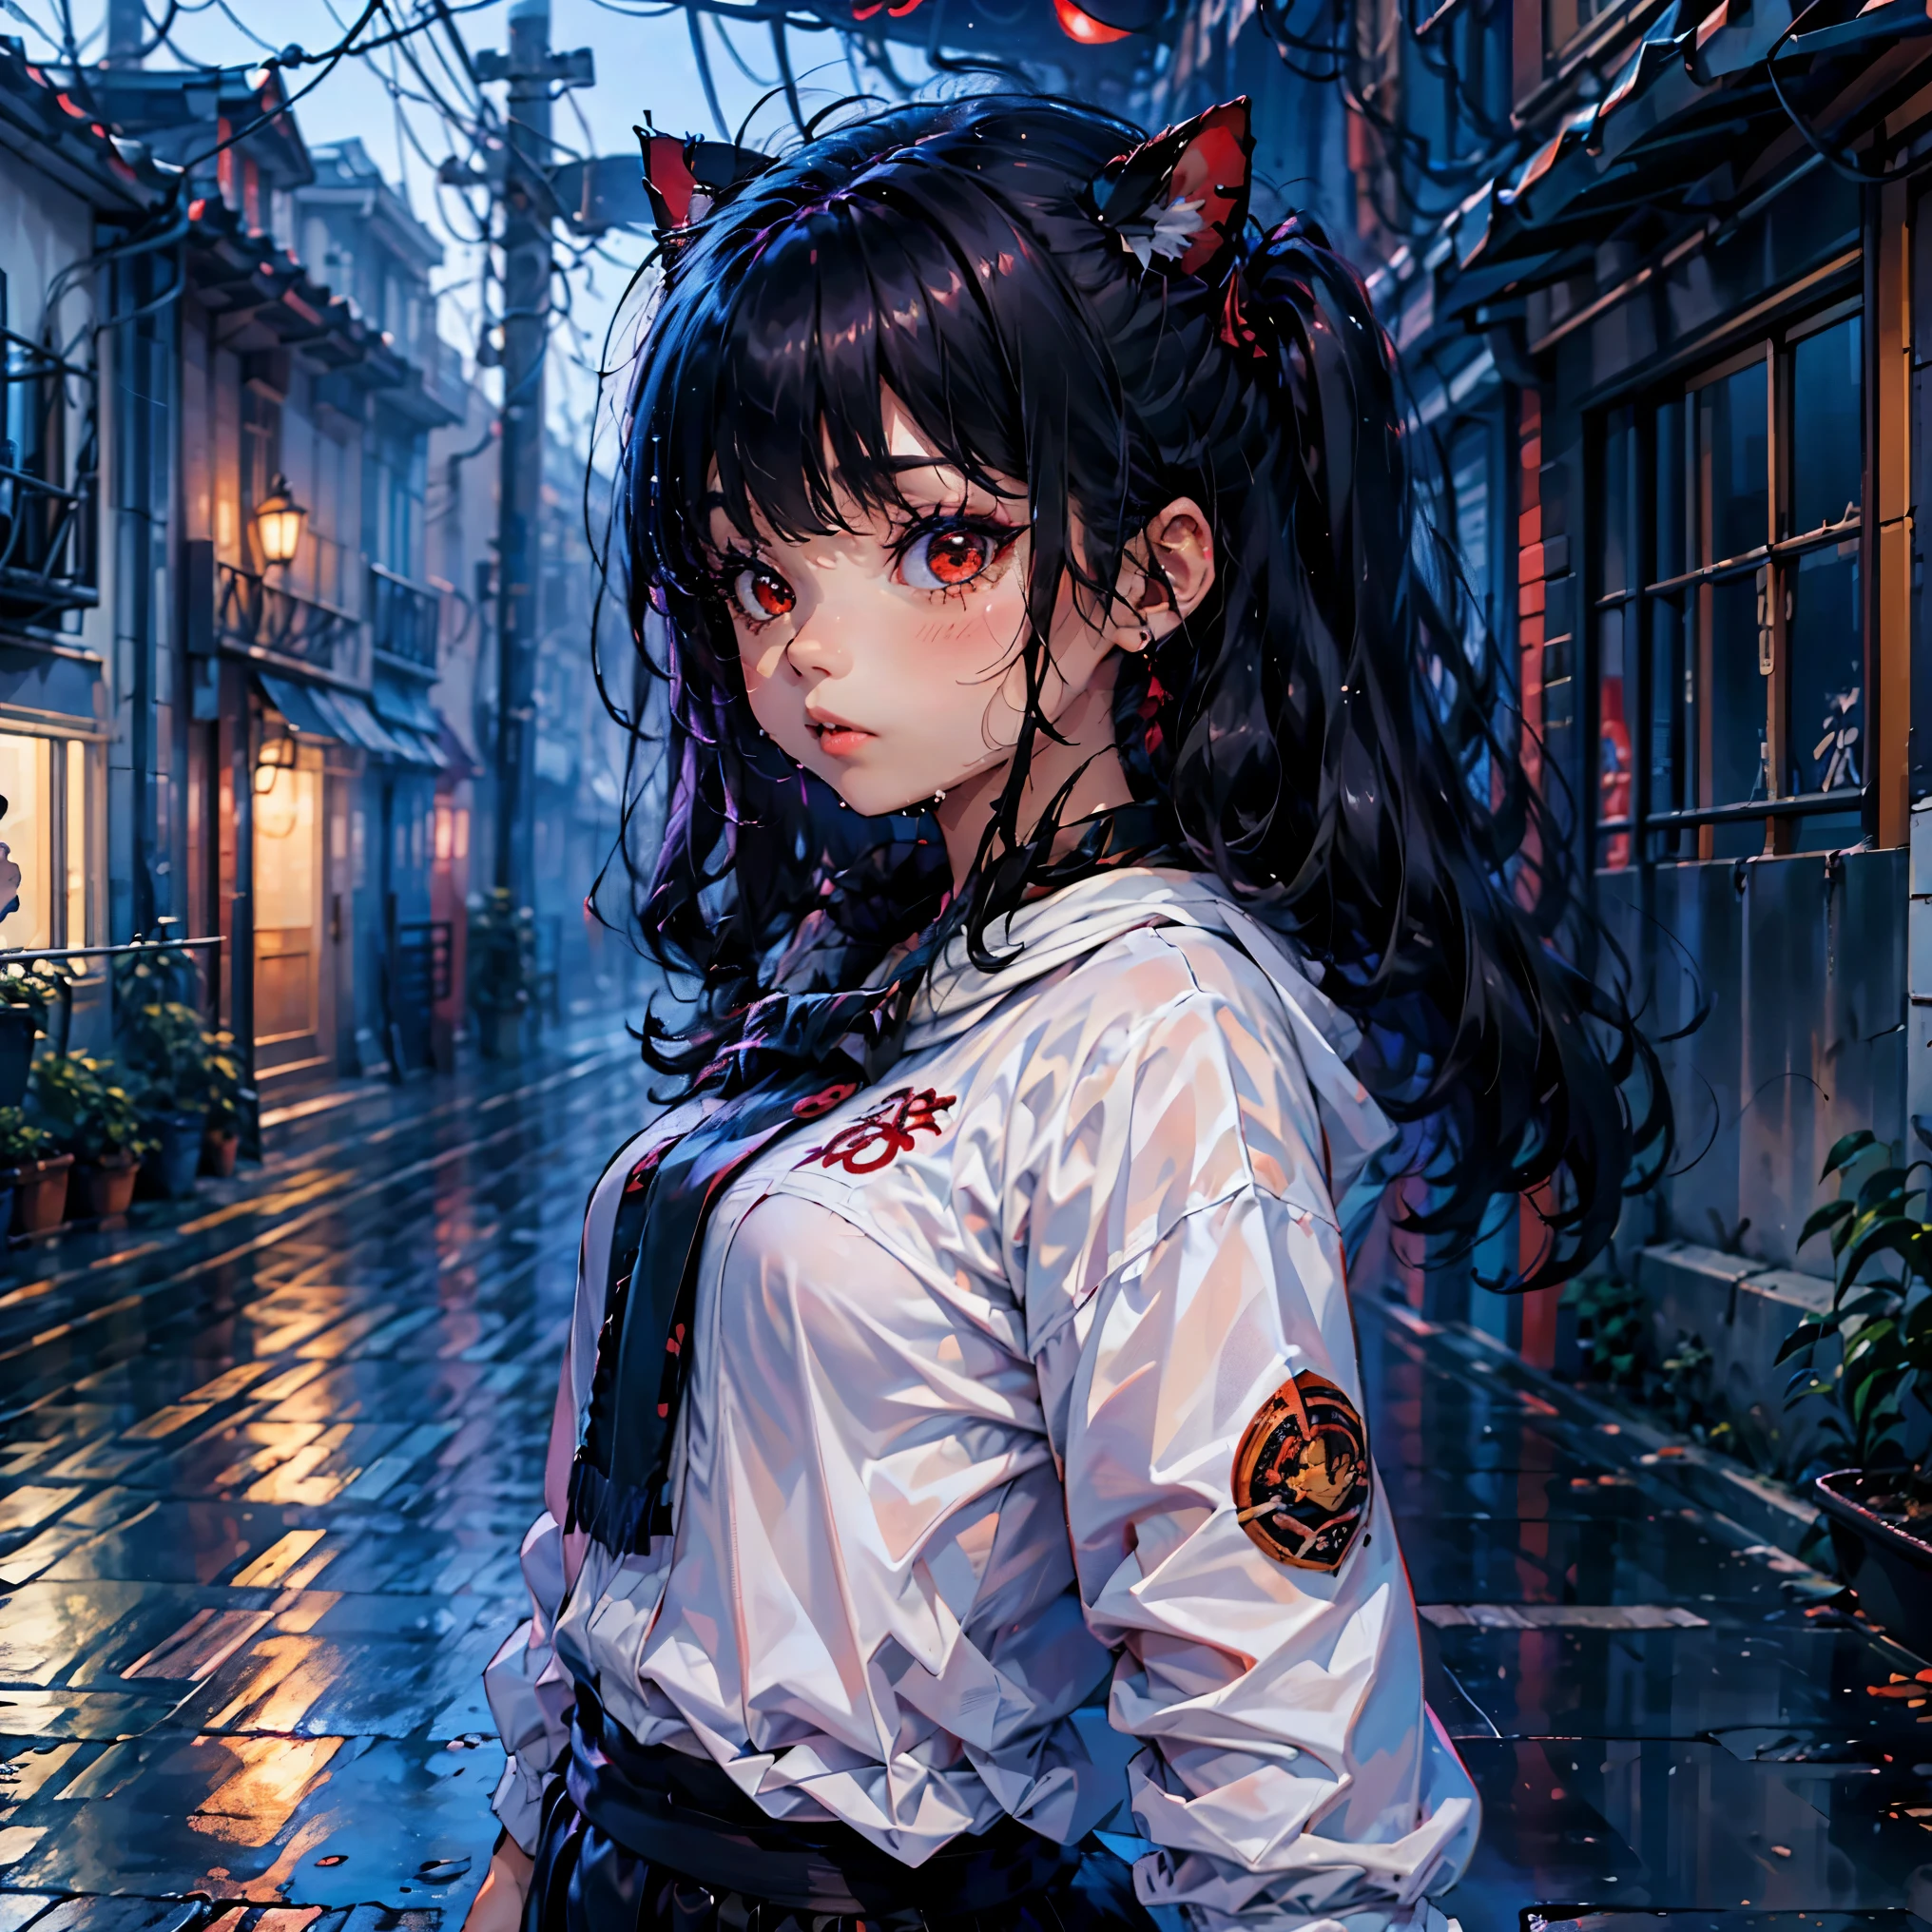 (junkotvv cabelo preto comprido com orelhas de gato e olhos vermelhos), Ilustração 3D de uma garota na chuva, (garota molhada), (chuva forte com vento)